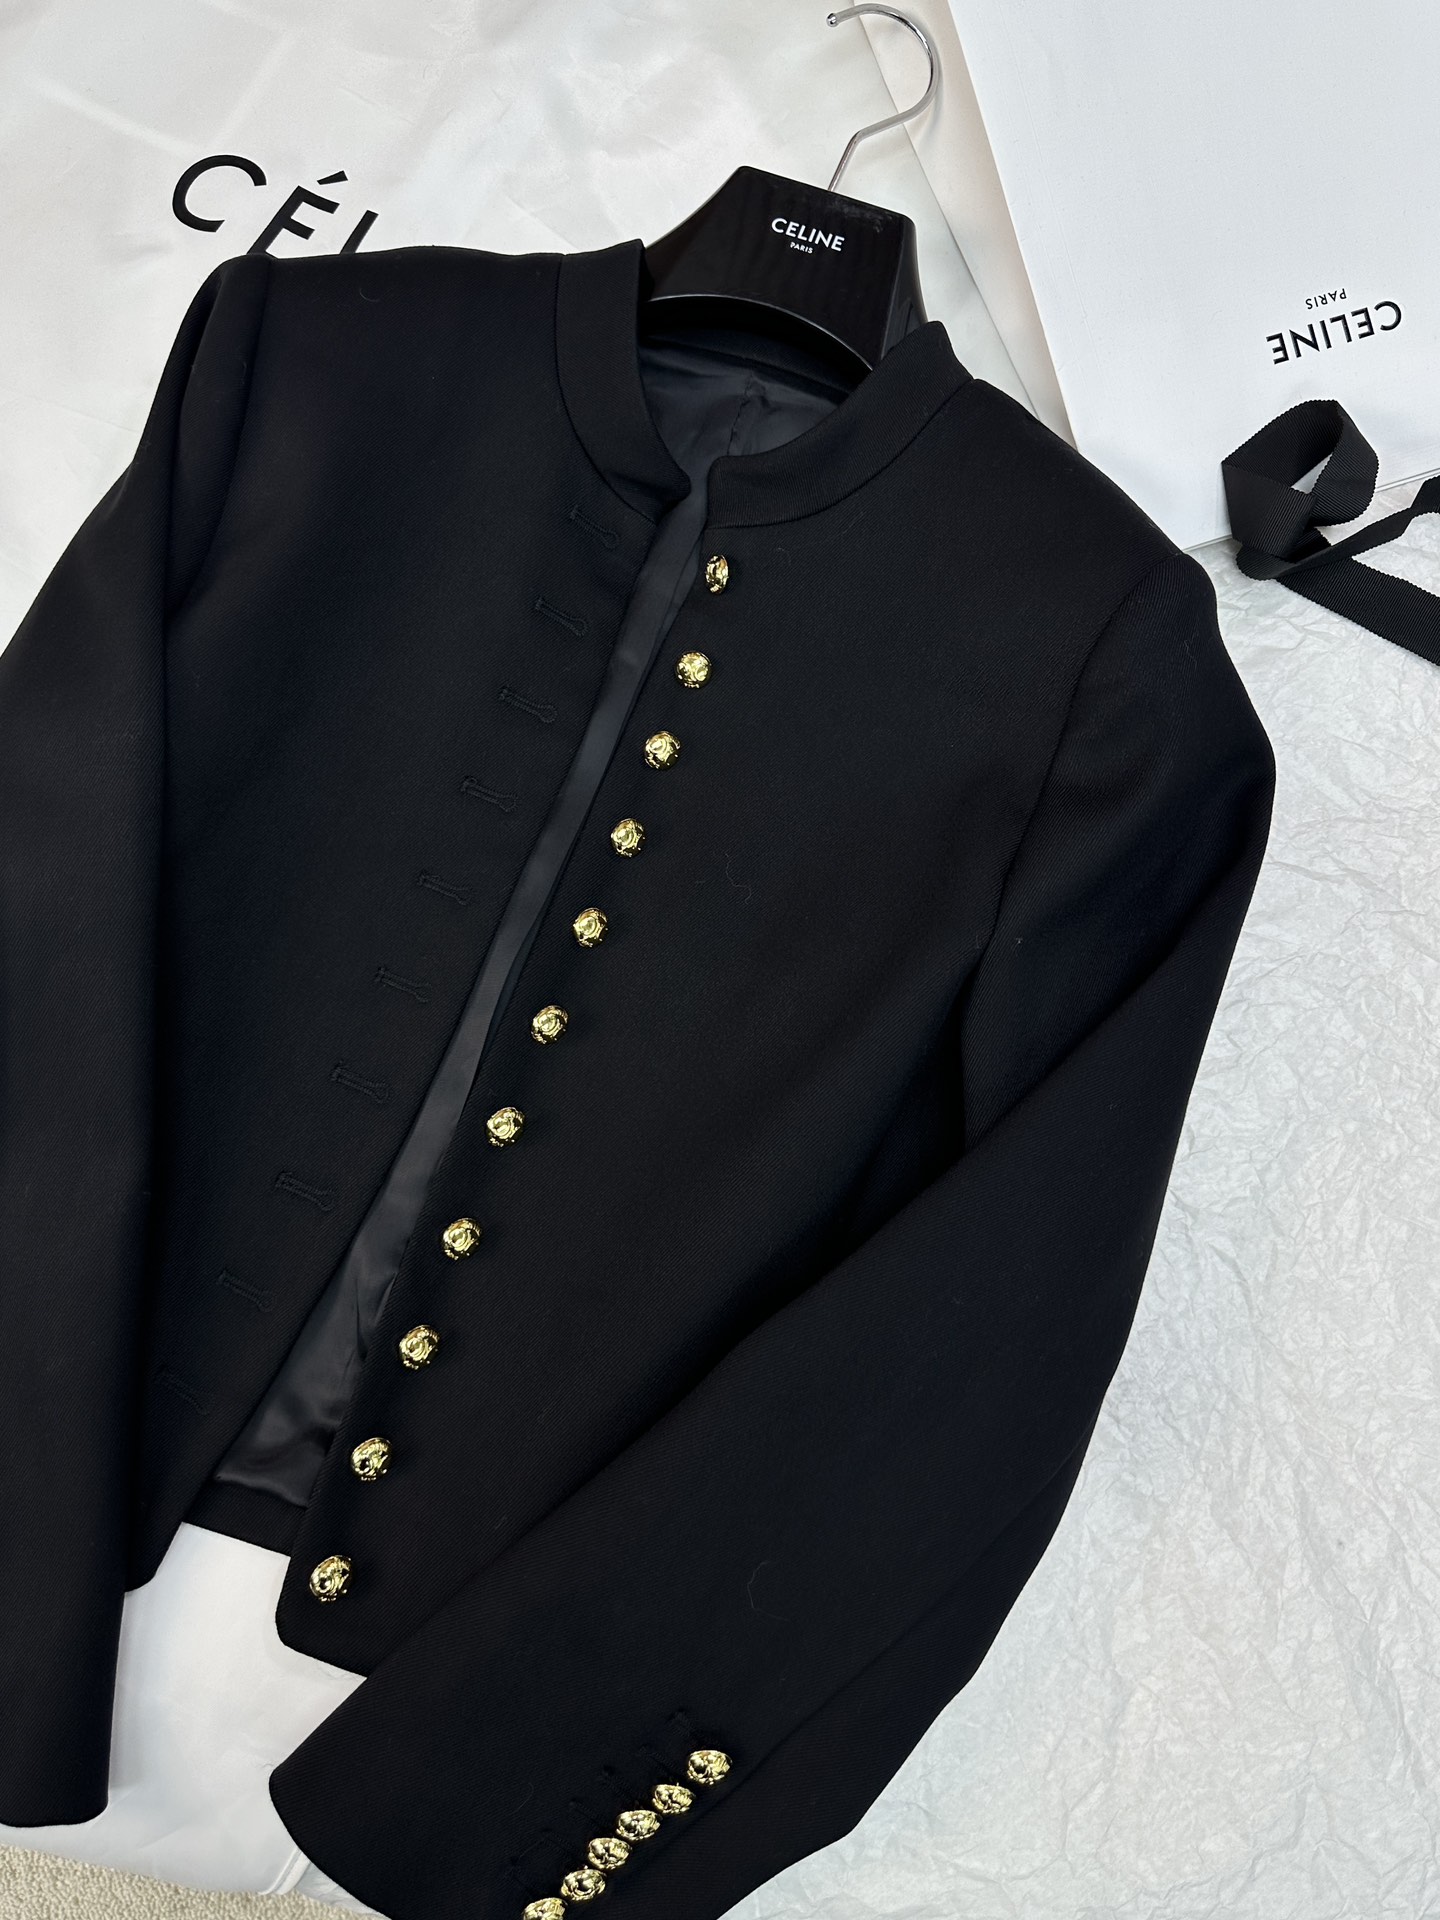 激安大特価最新作の セリーヌツイードジャケットコピー 暖かい トップス アウター ファッション 高級品 ブラック_1